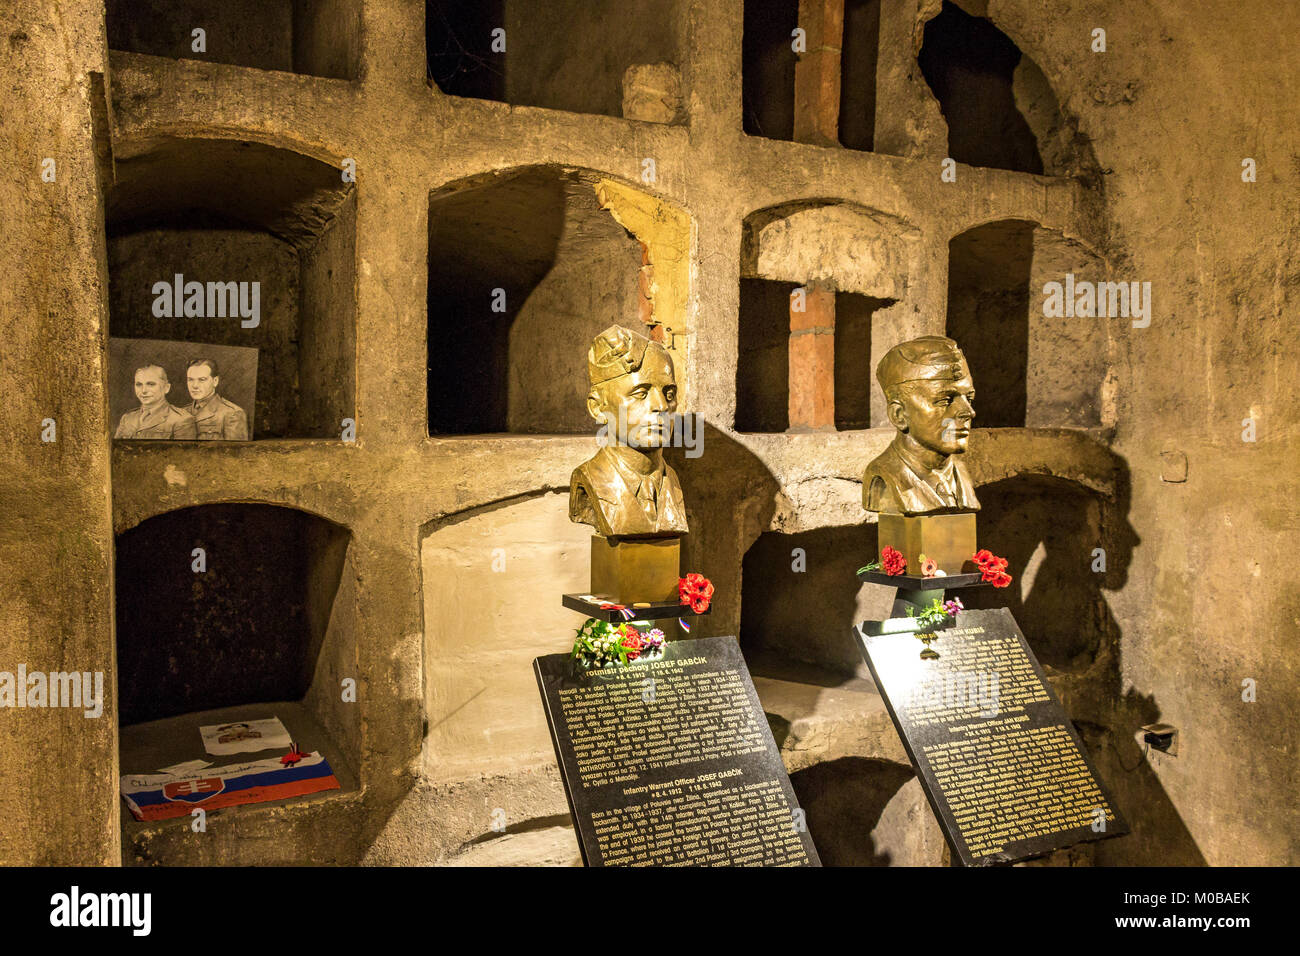 Des bustes de Jan Kubiš et de Jozef Gabčík ont été tués dans la crypte de l'église Saint-Cyrils de Prague après l'assassinat de Reinhardt Heydrich en 1942 Banque D'Images